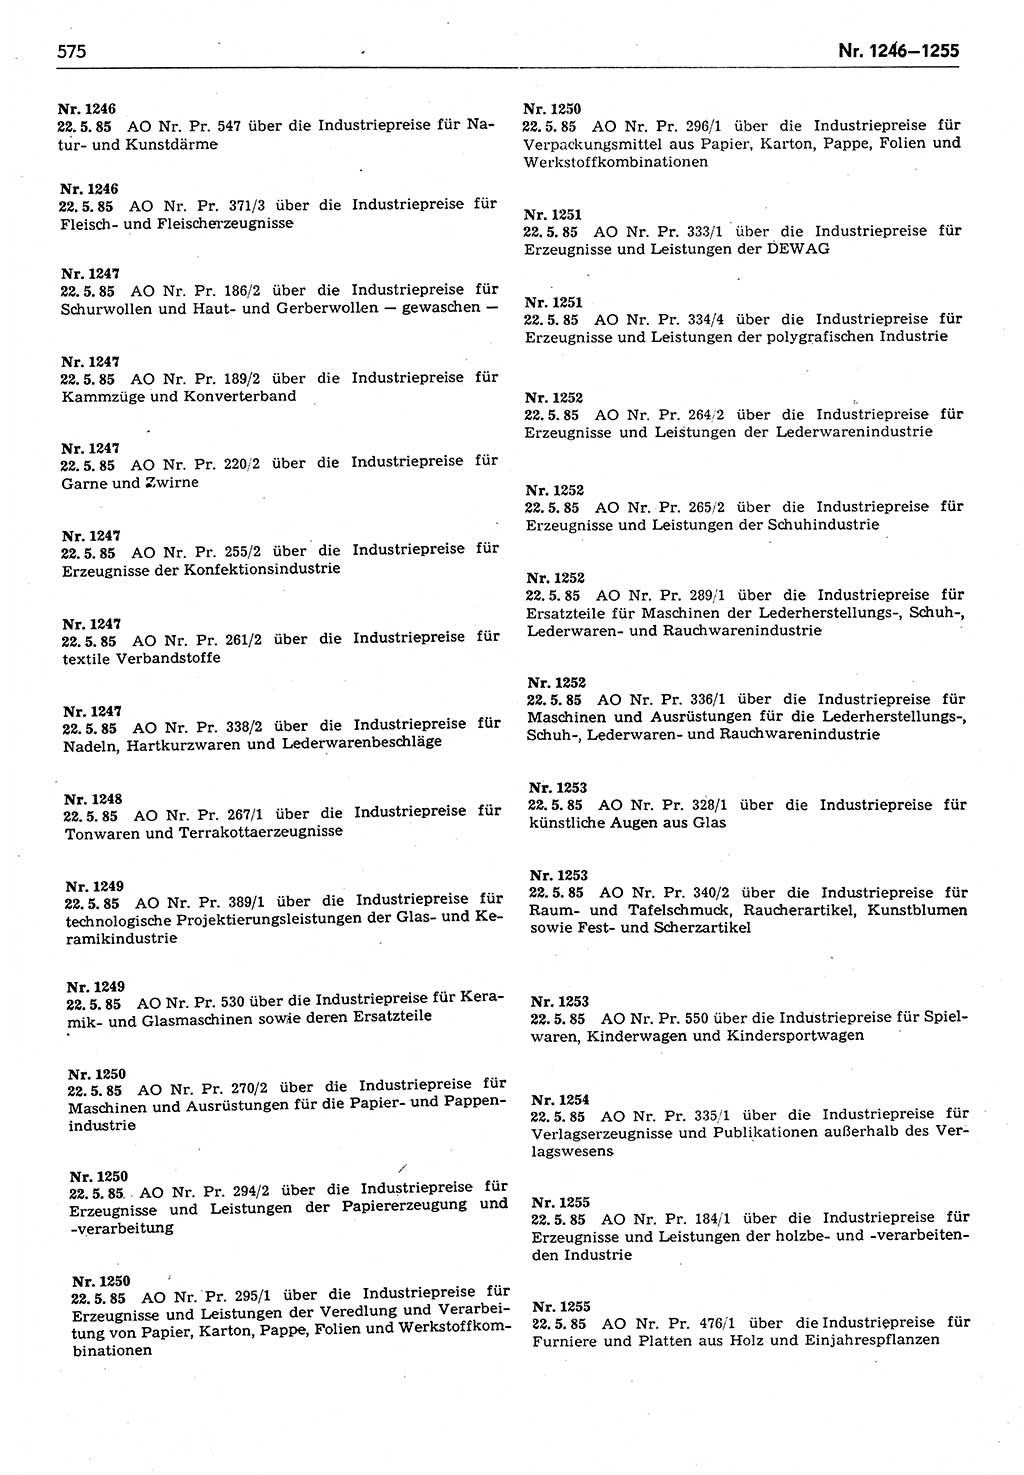 Das geltende Recht der Deutschen Demokratischen Republik (DDR) 1949-1988, Seite 575 (Gelt. R. DDR 1949-1988, S. 575)